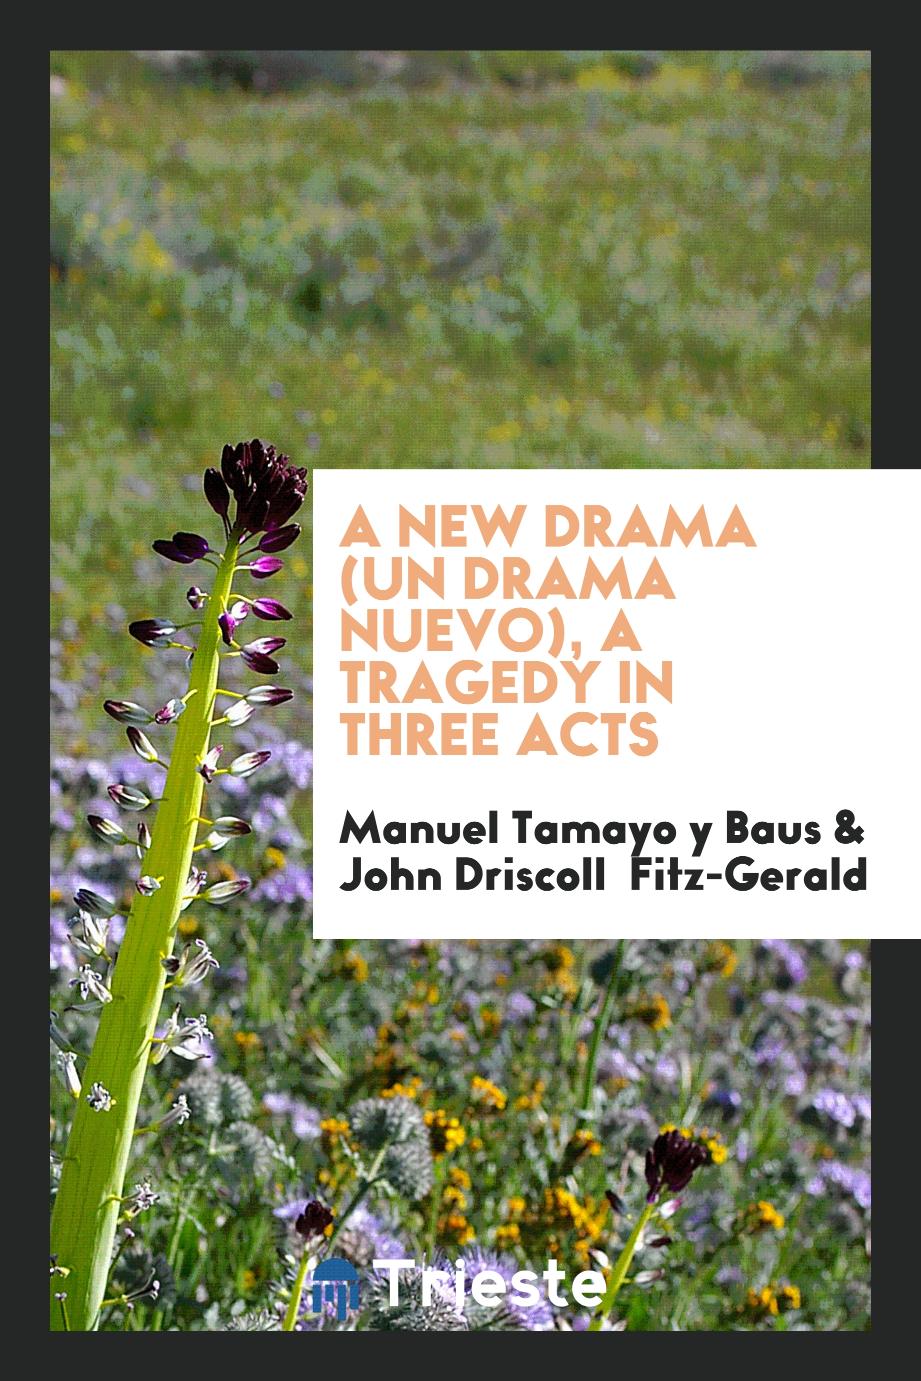 A new drama (Un drama nuevo), a tragedy in three acts